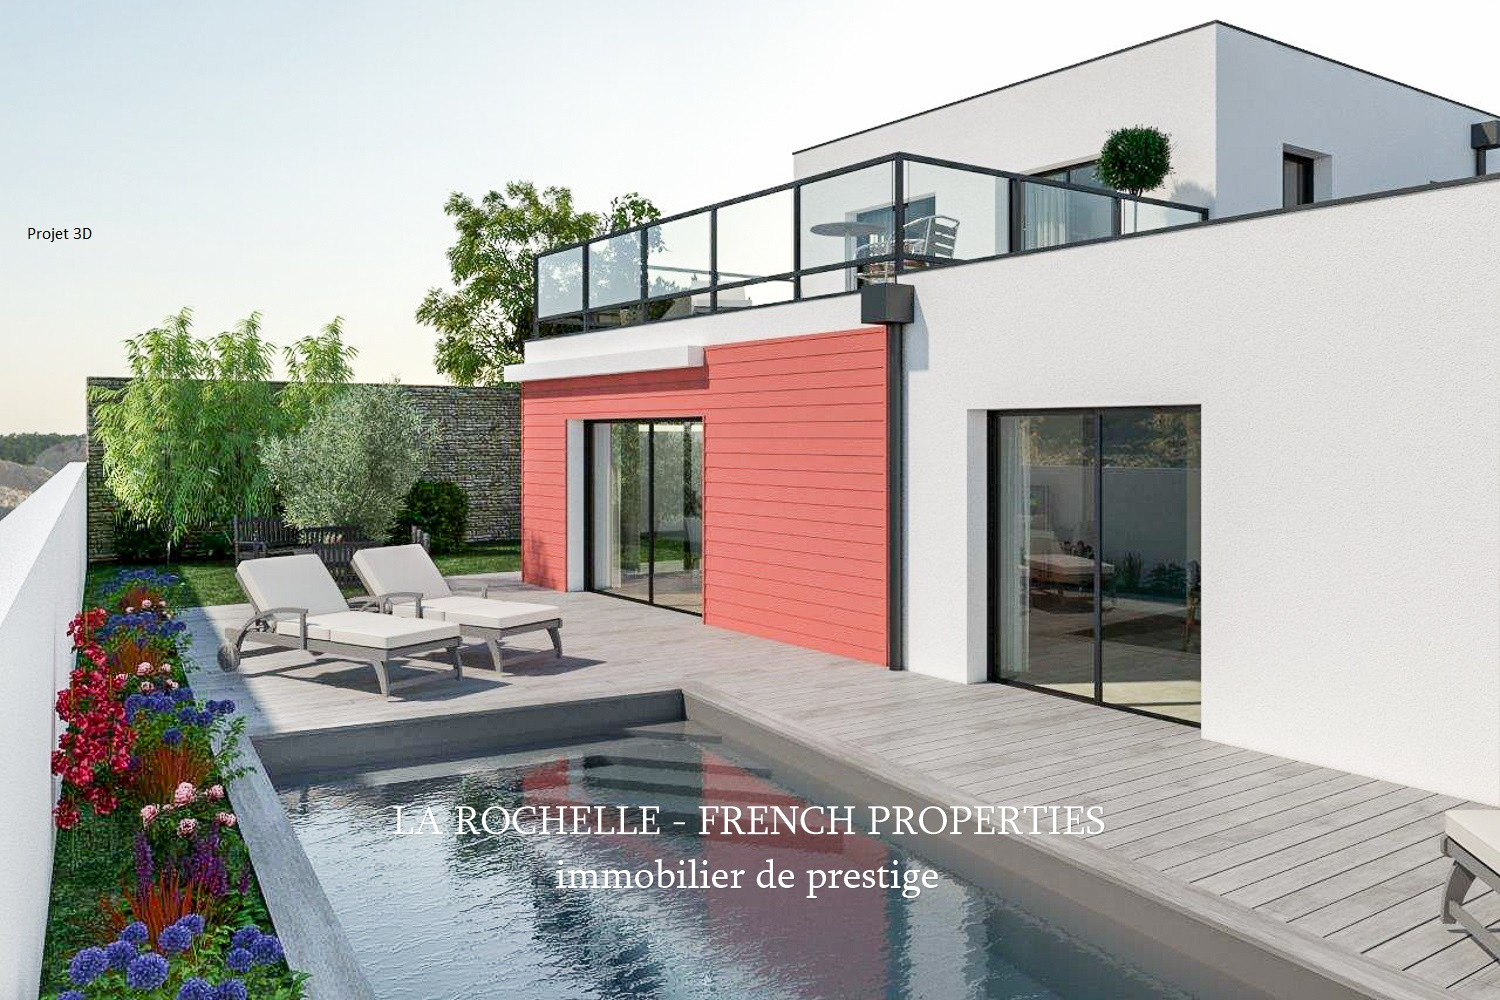 real estate agency La rochelle